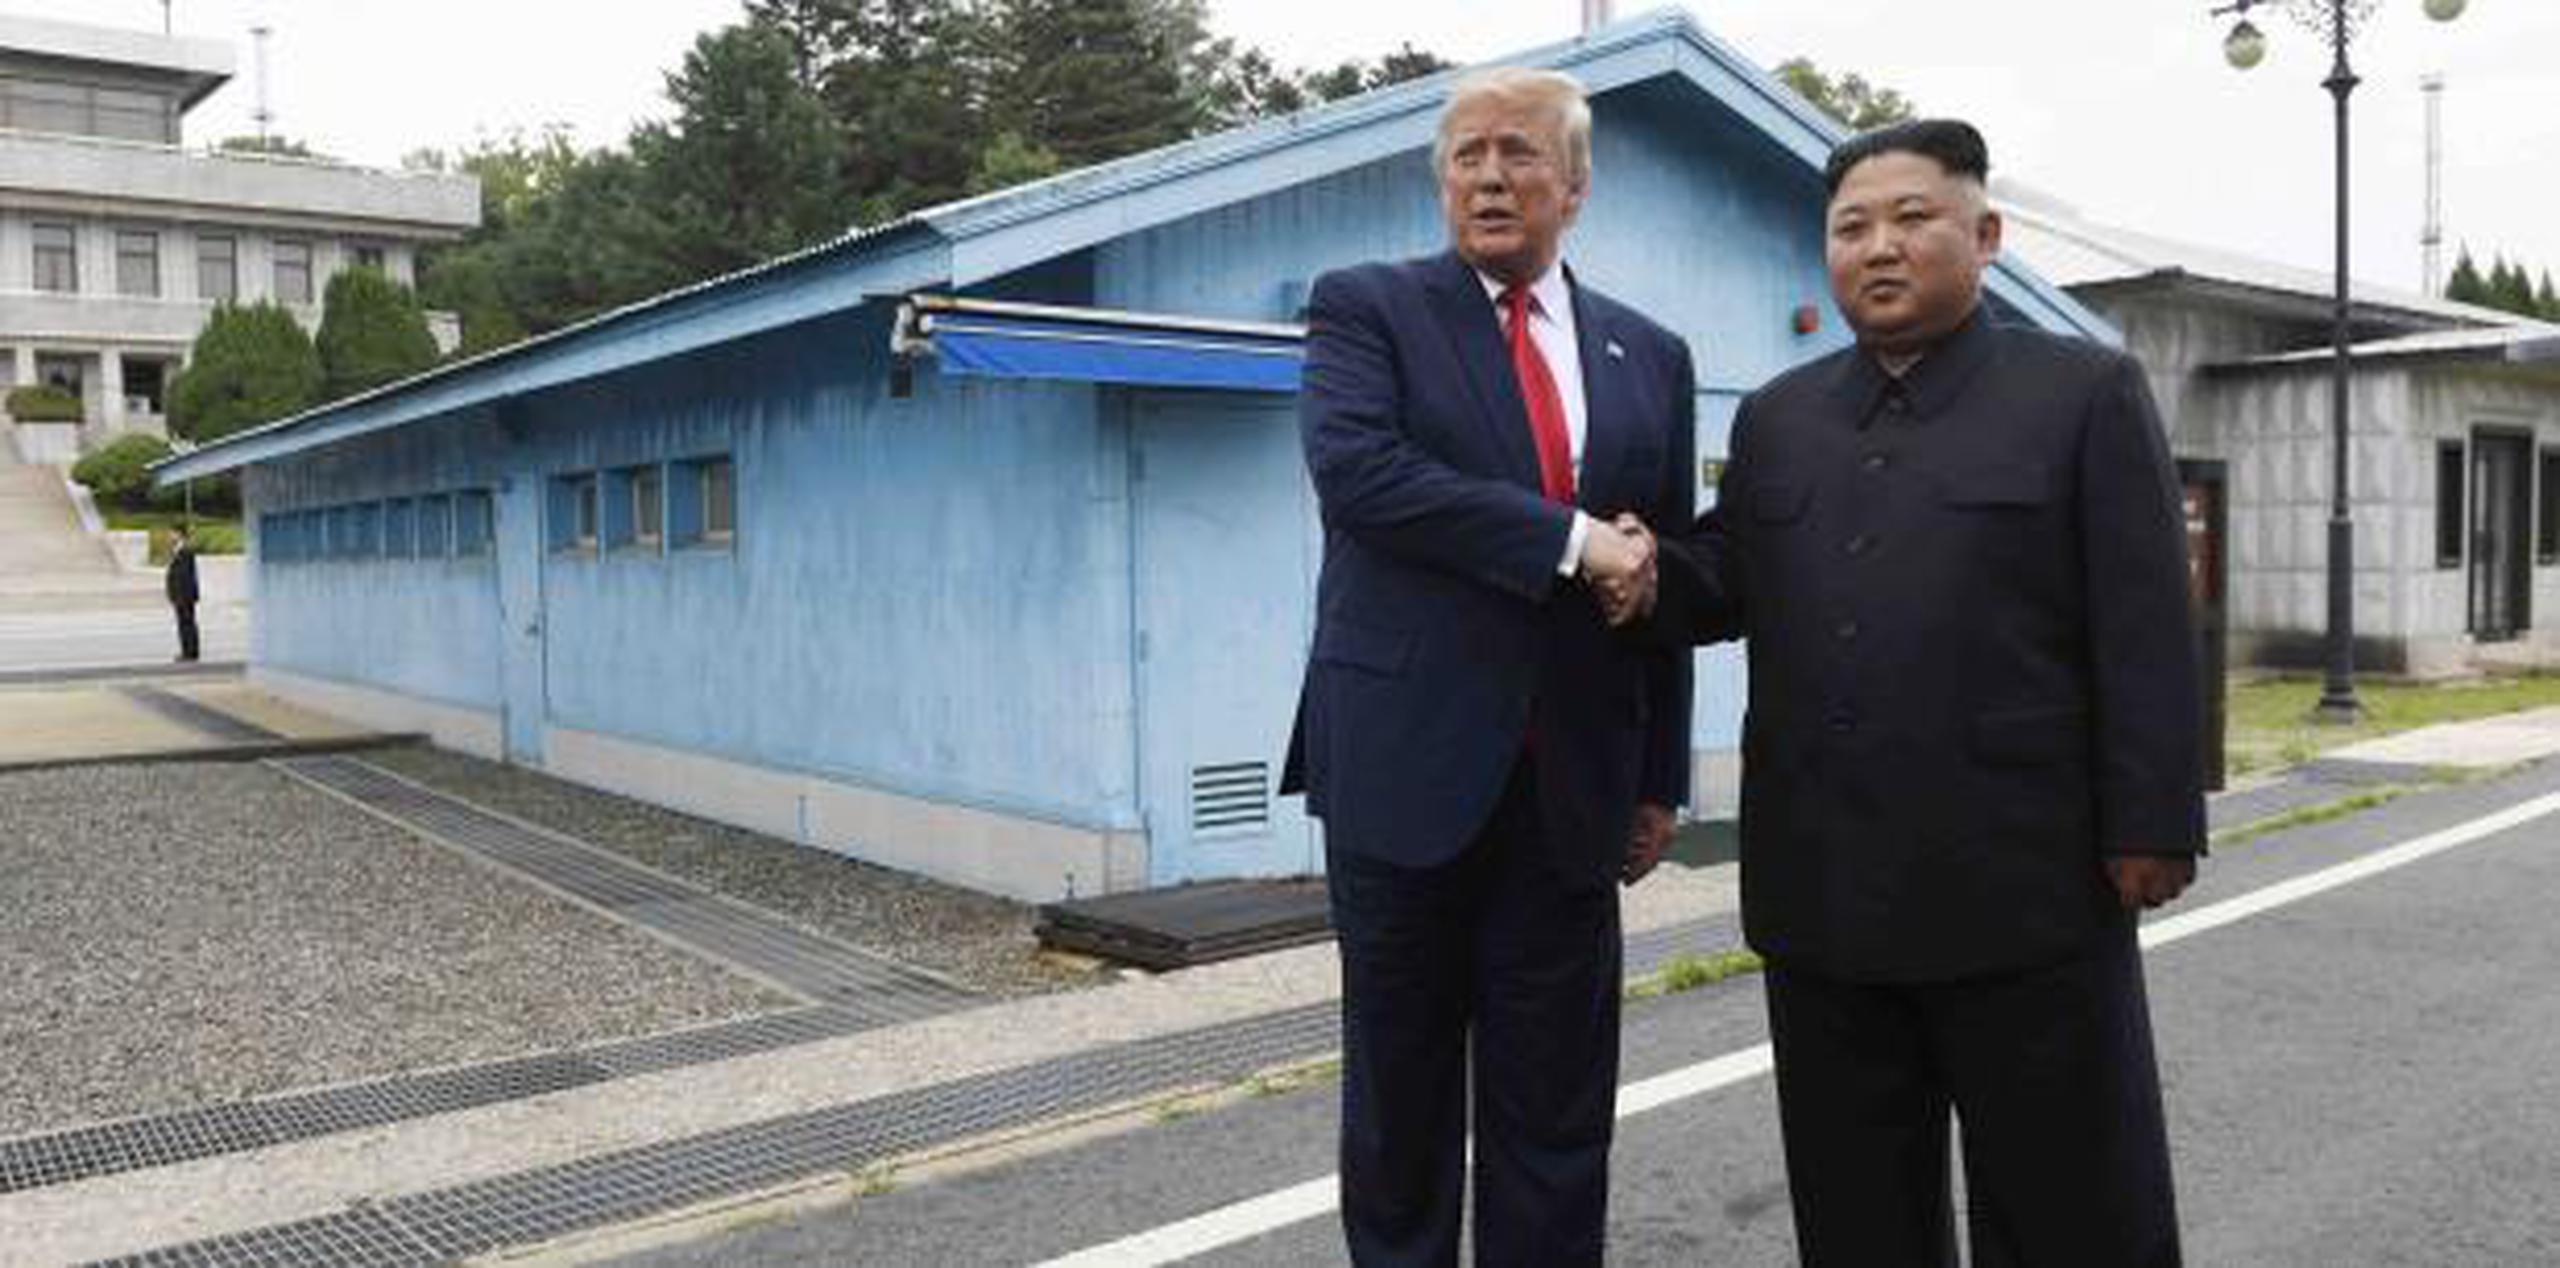 En la diplomacia de alto nivel que han entablado Donald Trump y Kim Jong-un, las reuniones de trabajo han resultado útiles para cuadrar la logística de las cumbres, pero no han dado frutos a la hora de definir un acuerdo nuclear. (Archivo)